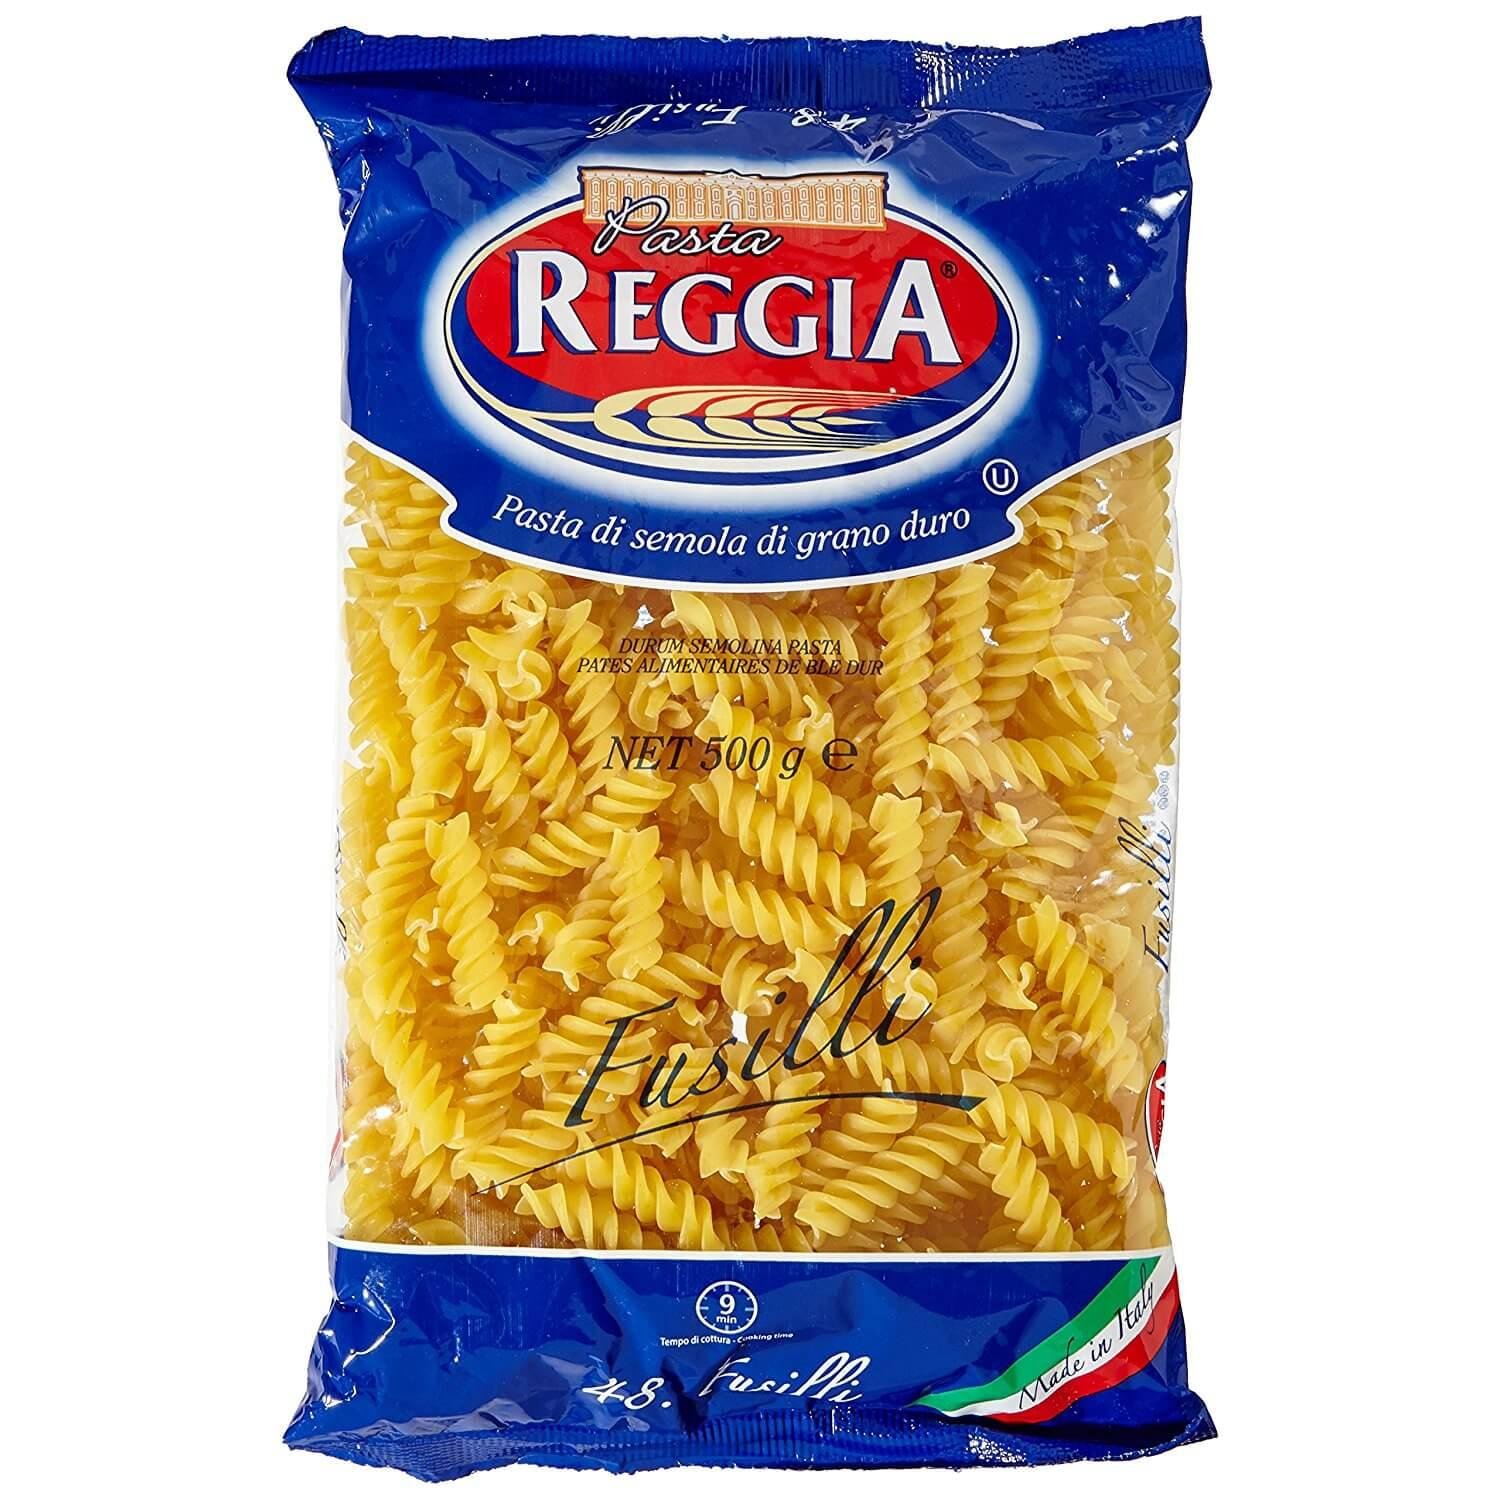 Упаковка спагетти. Спагетти Spaghetti Reggia di Caserta. Паста Reggia. Макароны спагетти гр а в/с 500гр.. Макароны в упаковке.